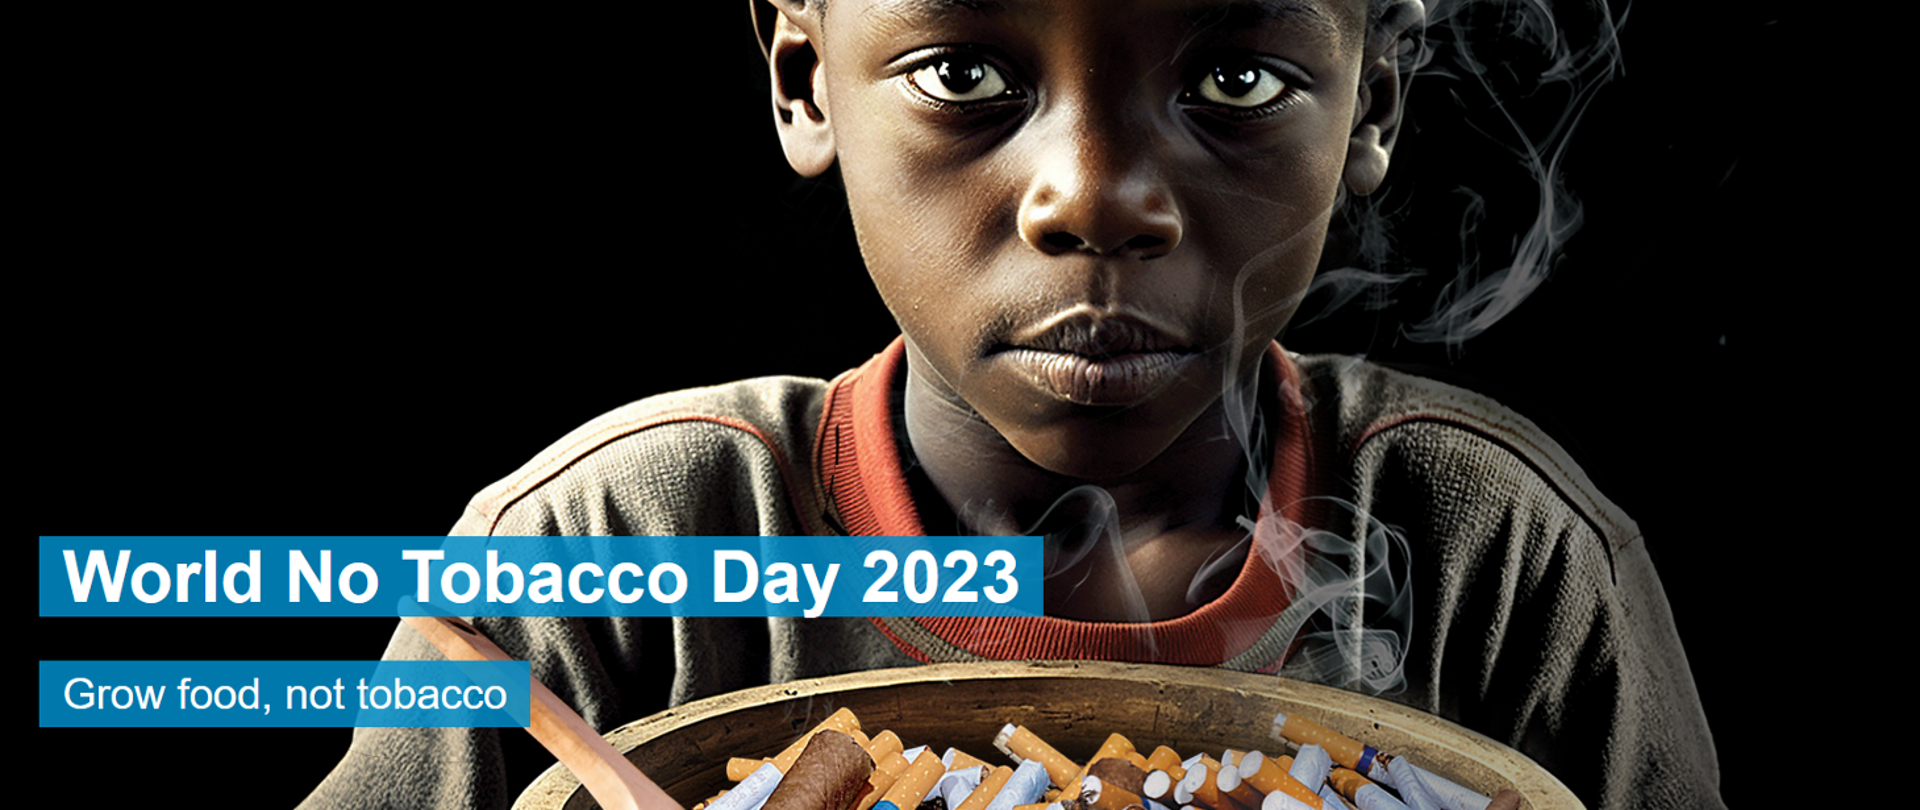 na czarnym tle postać afrykańskiego chłopca trzymającego drewnianą miskę z papierosami i drewnianą łyżką. Z papierosów wydobywa się dym, nad miską napis w języku angielskim World no tacacco Day 2023 Grow food, not tabacco